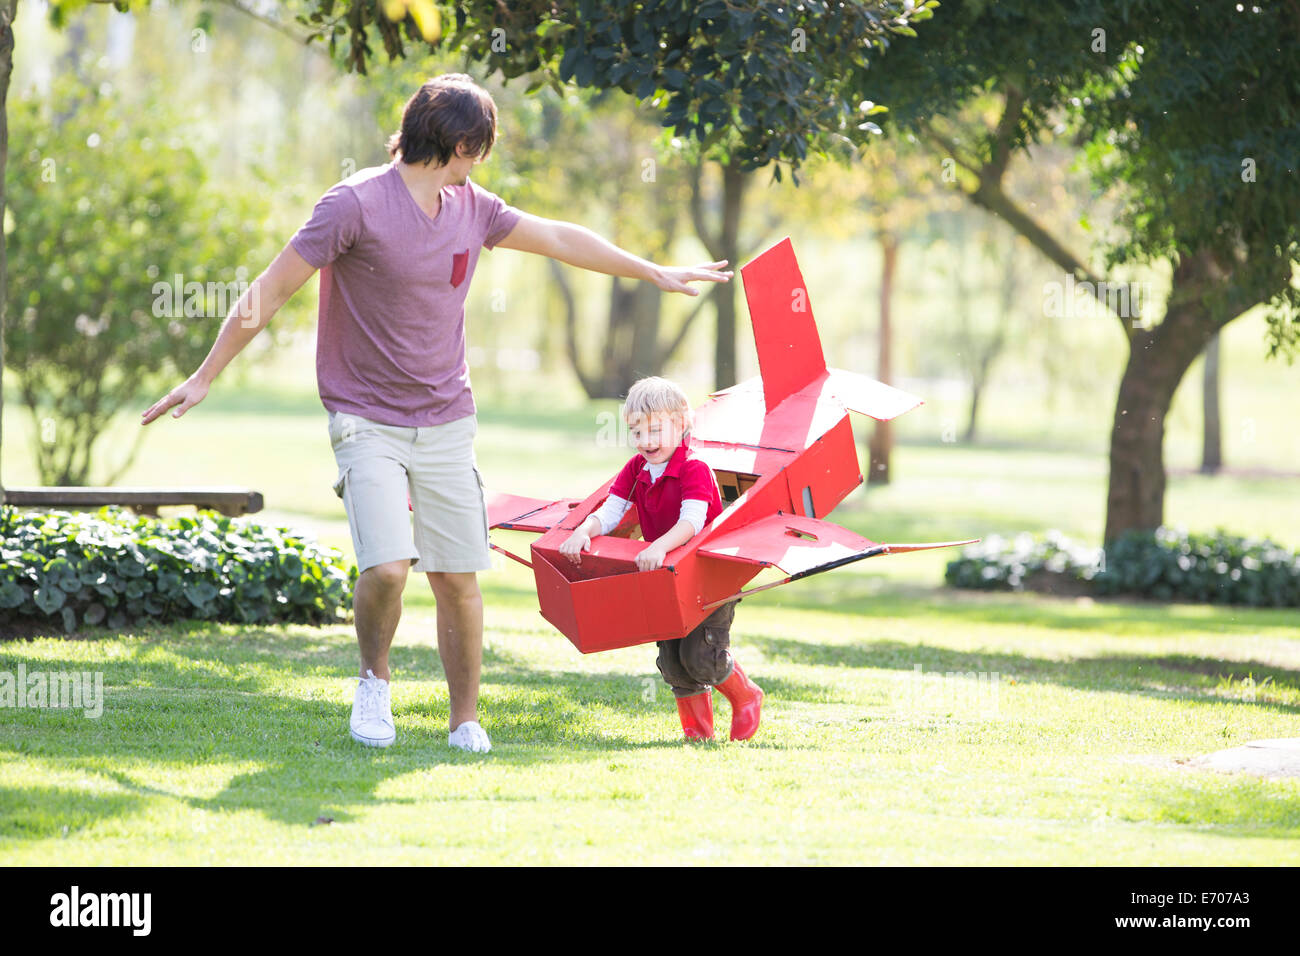 Vater und Sohn läuft mit Spielzeugflugzeug im park Stockfoto